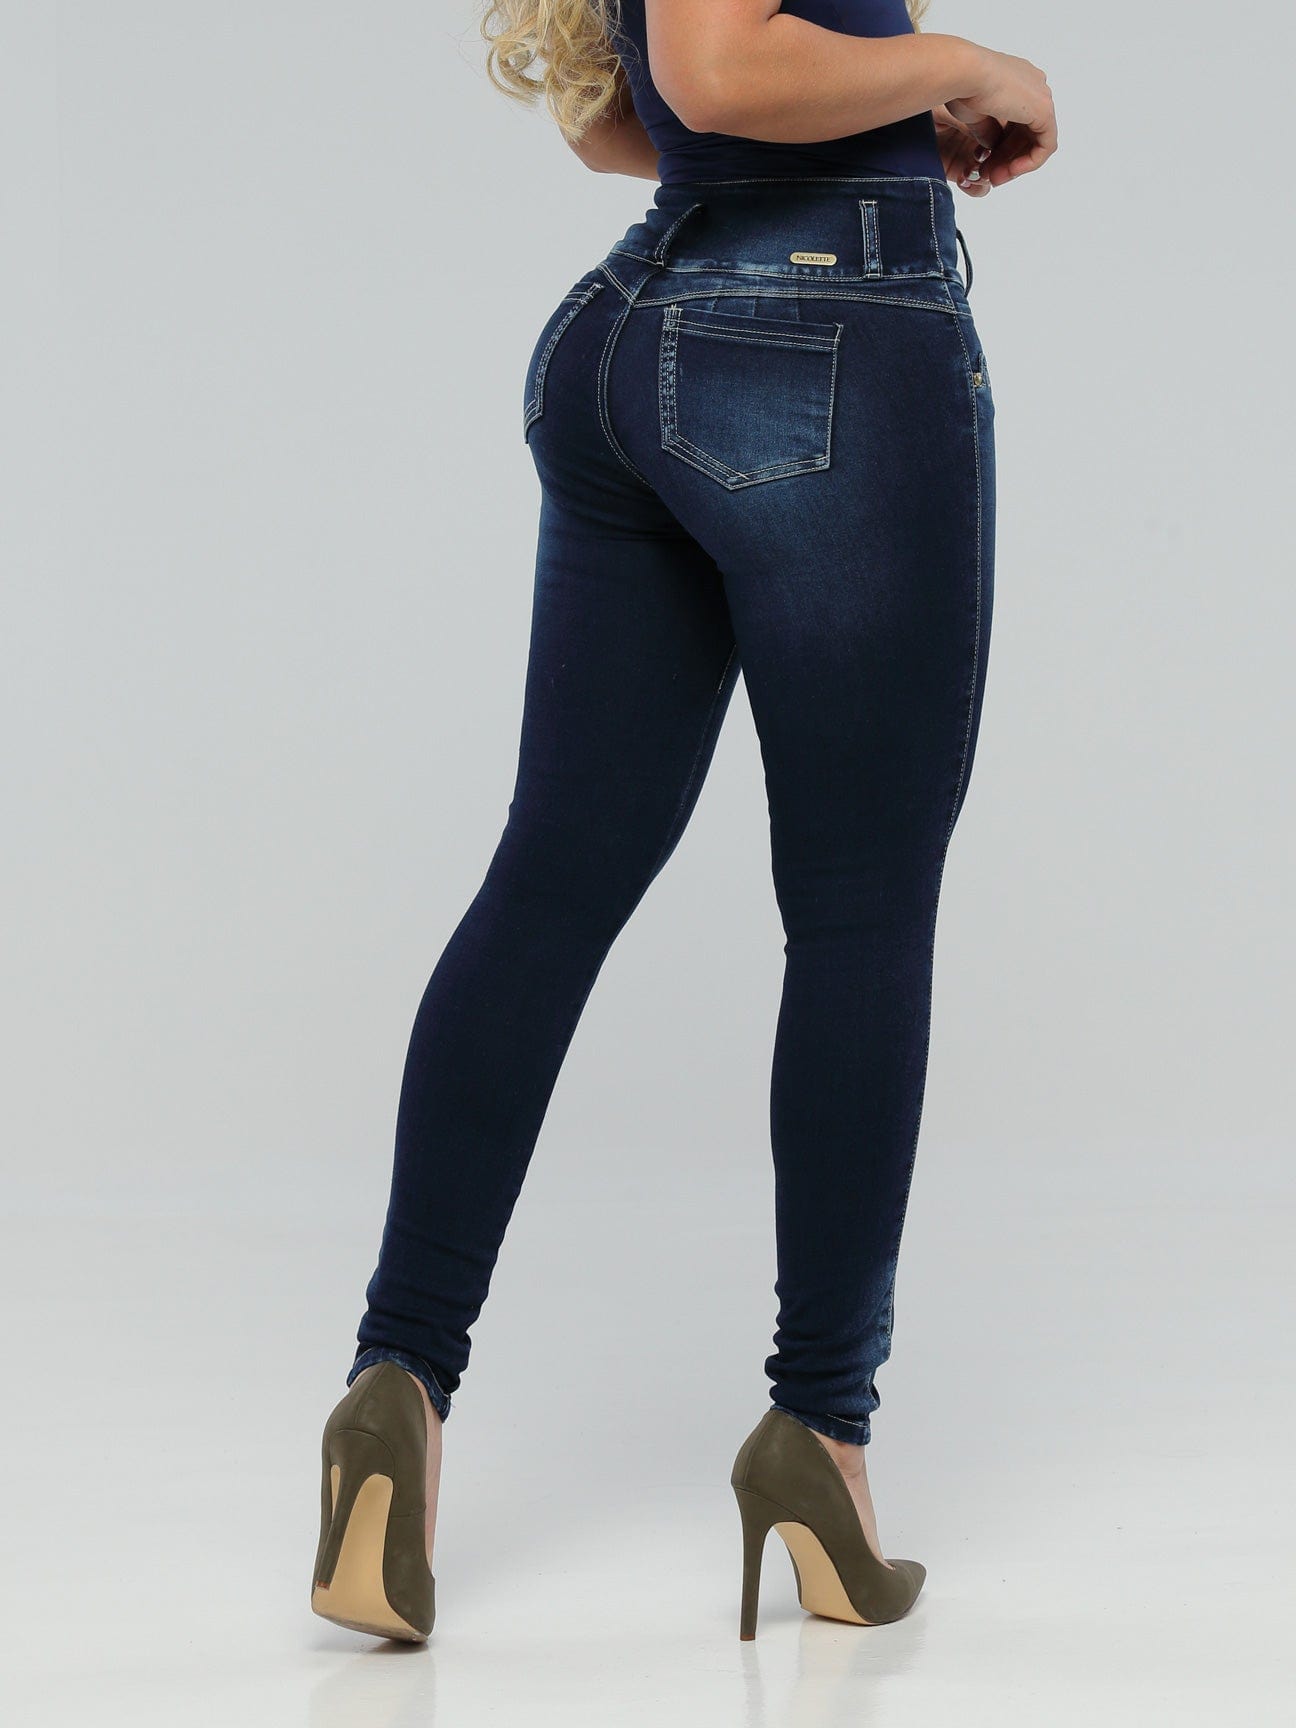 Jeans Levantadores De Glúteos Babe 14248 